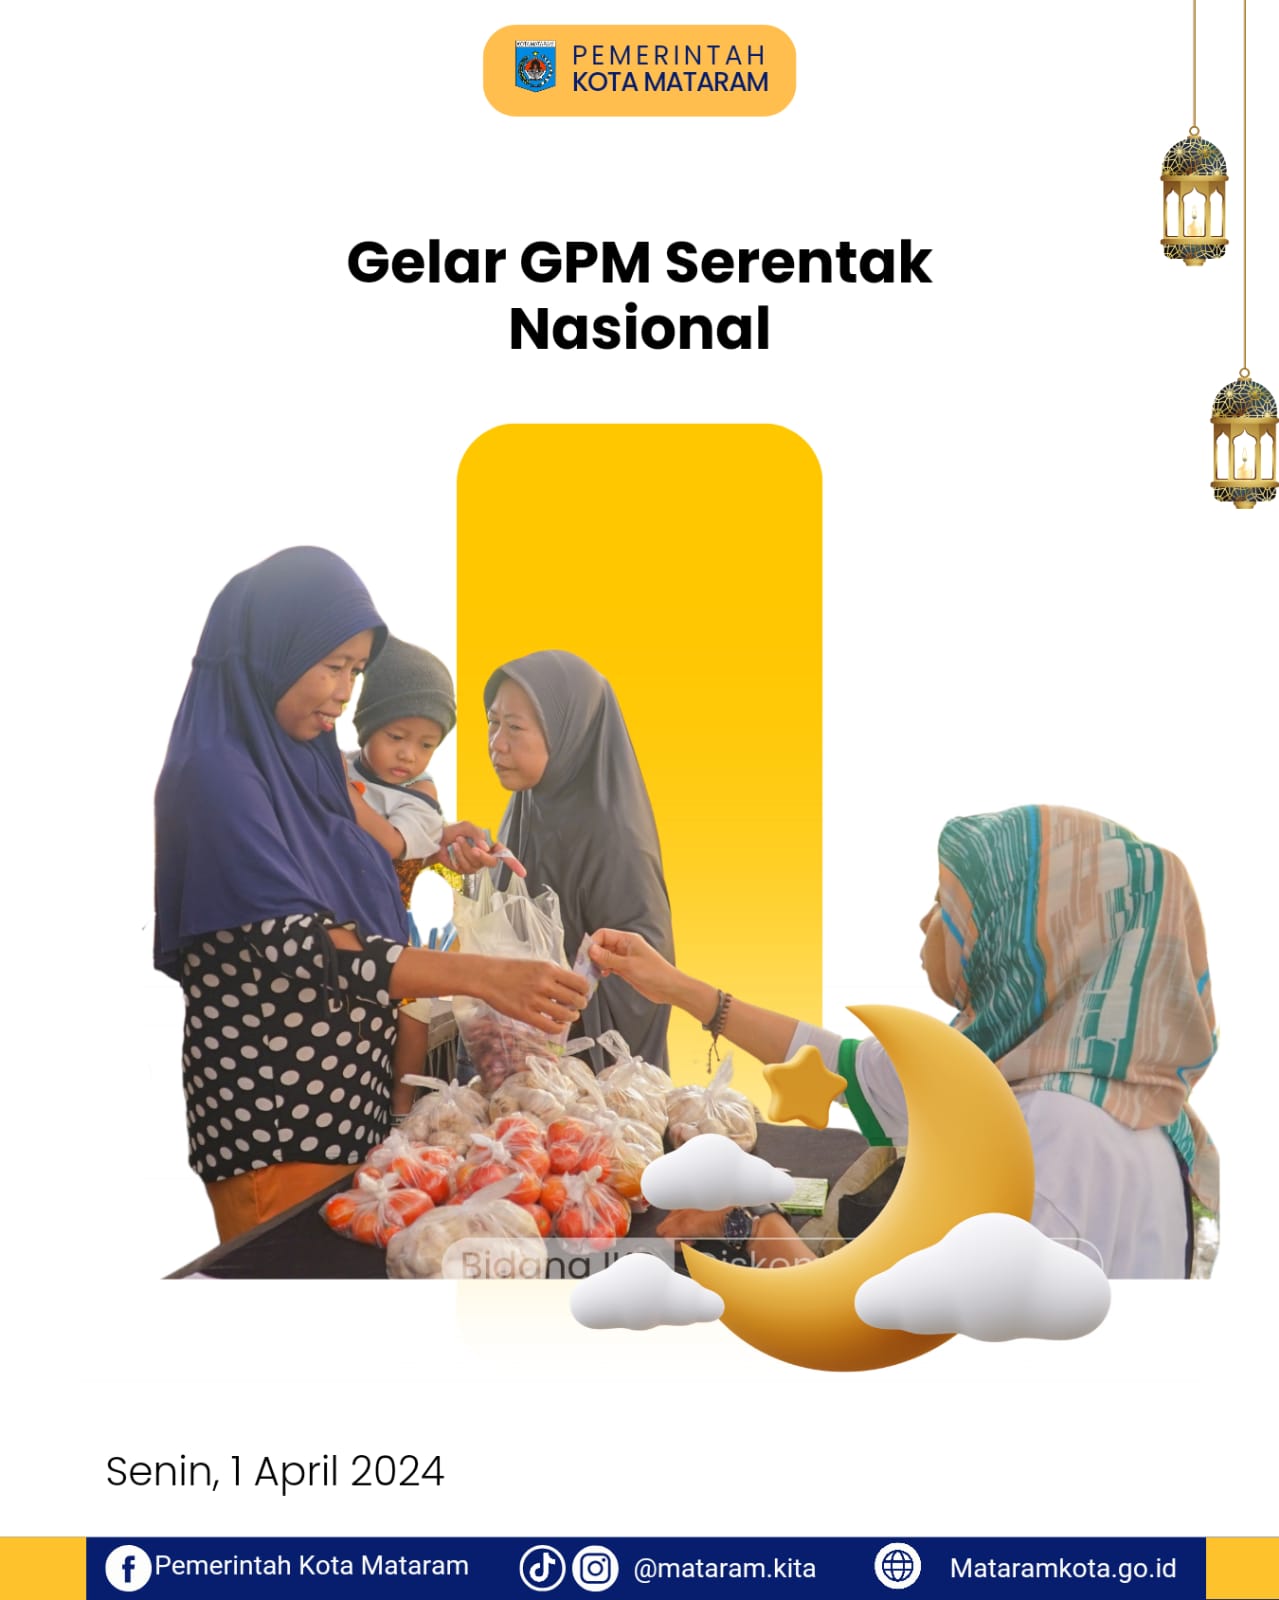 Gelar GPM Serentak Nasional, Pemkot Mataram Optimis Tekan Inflasi